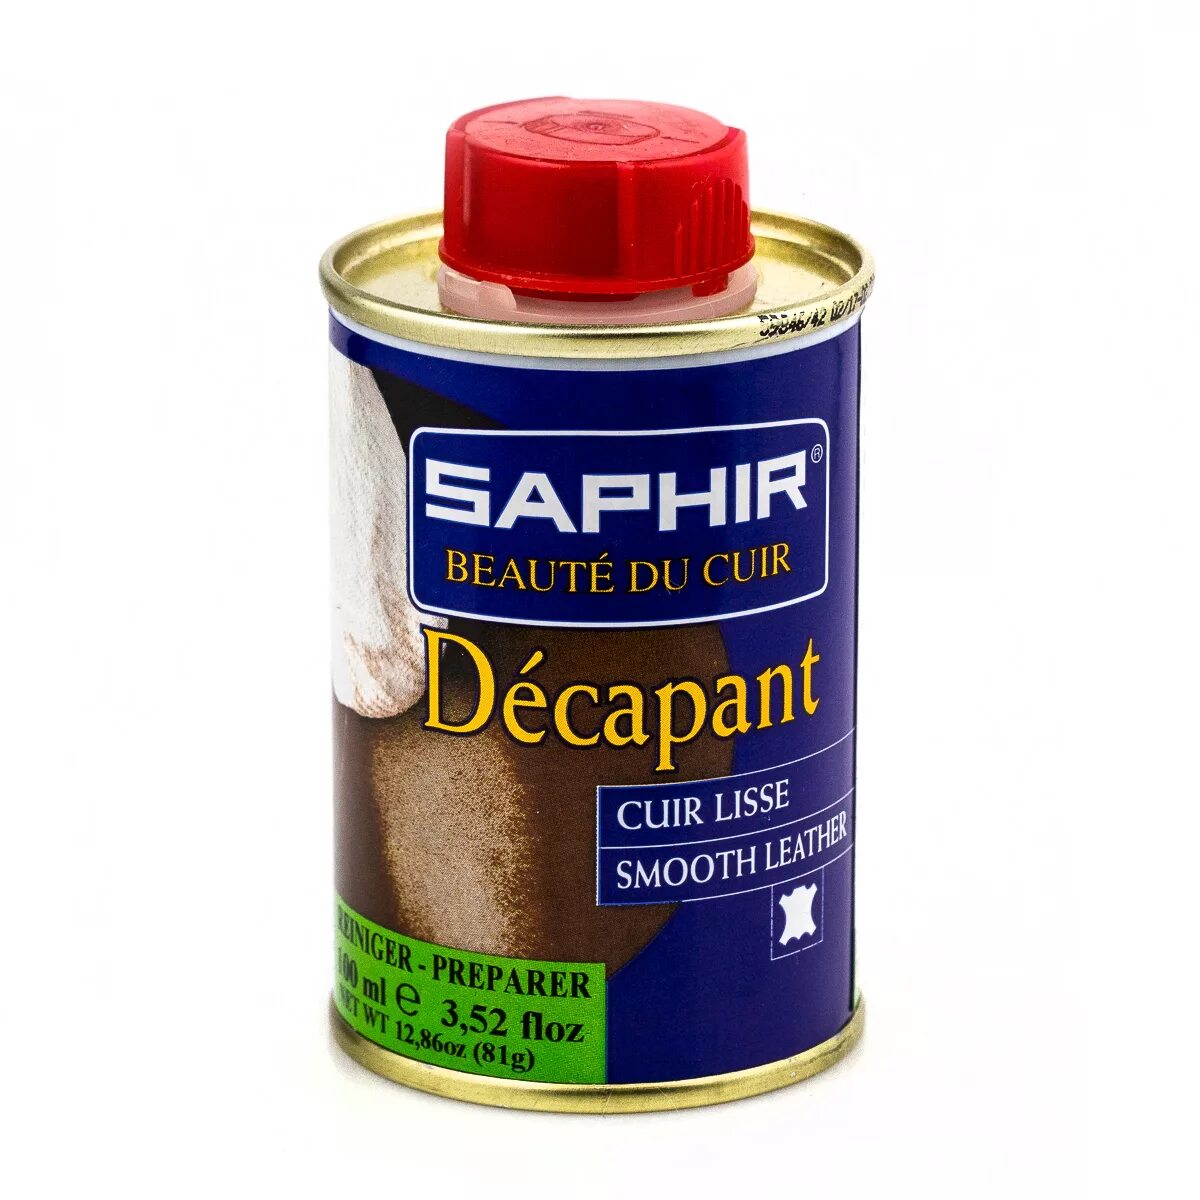 Saphir decapant. Очиститель кожи decapant. Очиститель для кожи Saphir. Сапфир очиститель для обуви.